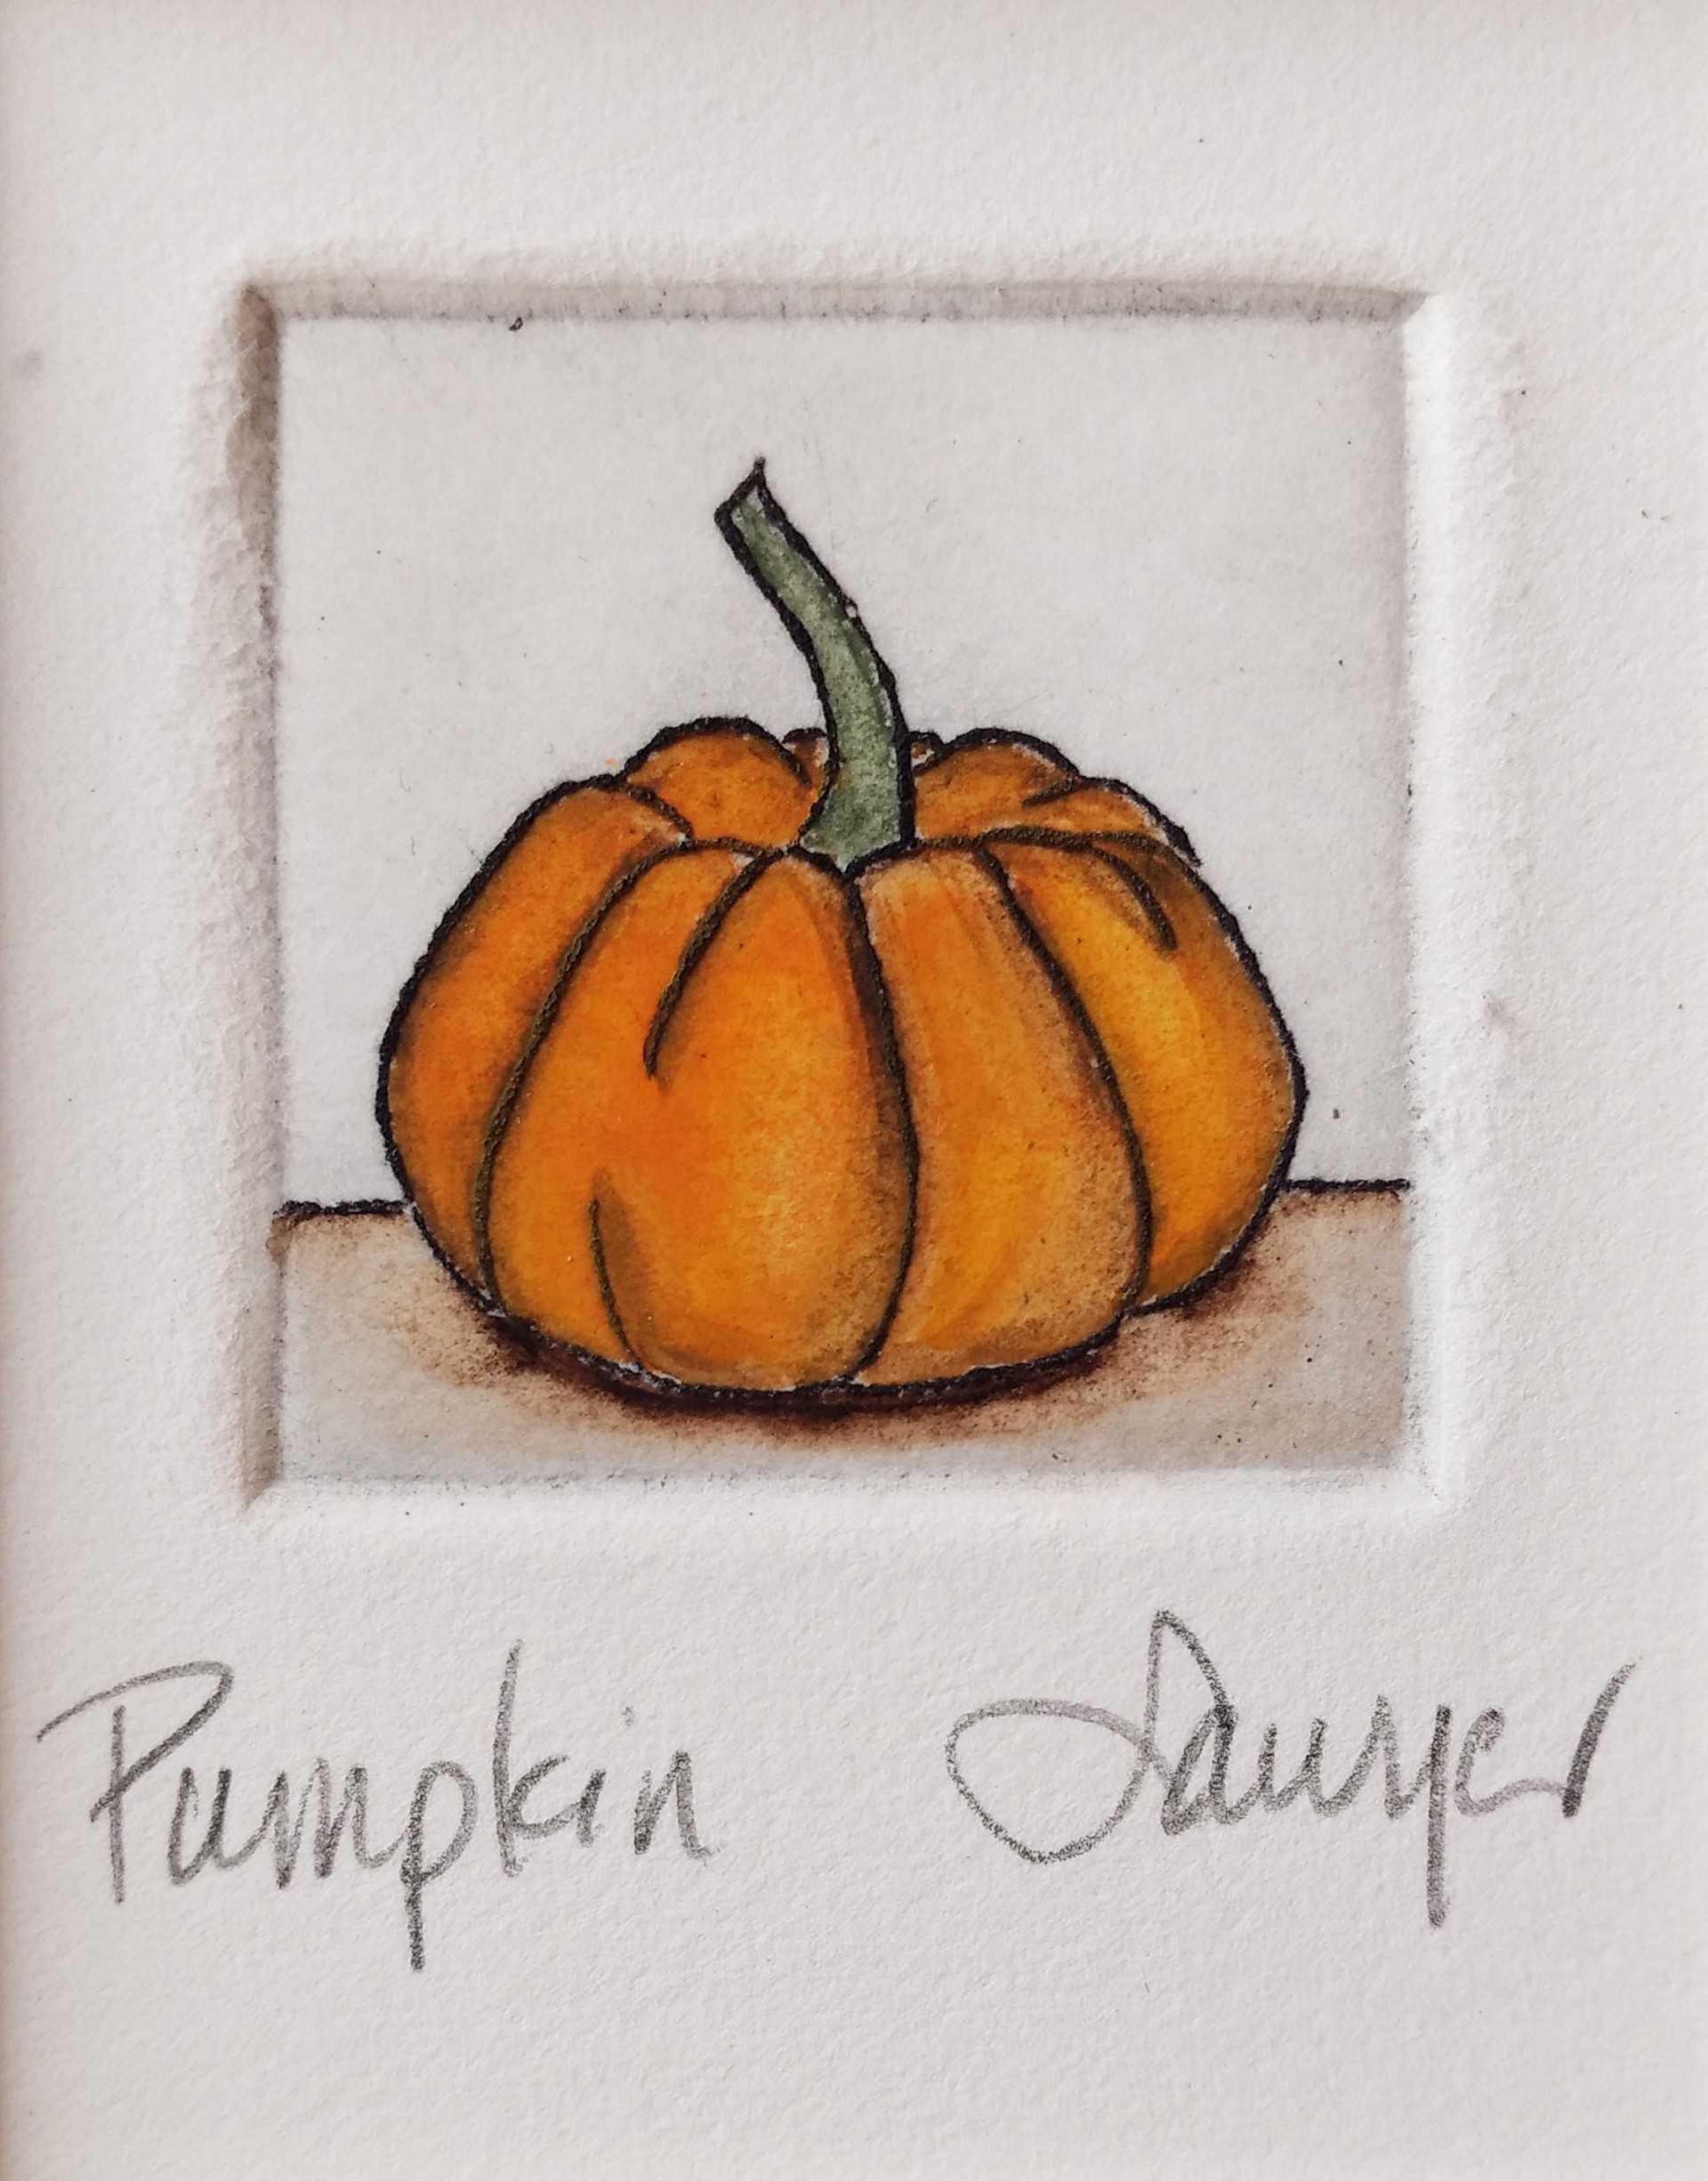 Pumpkin (framed) by Anne Sawyer